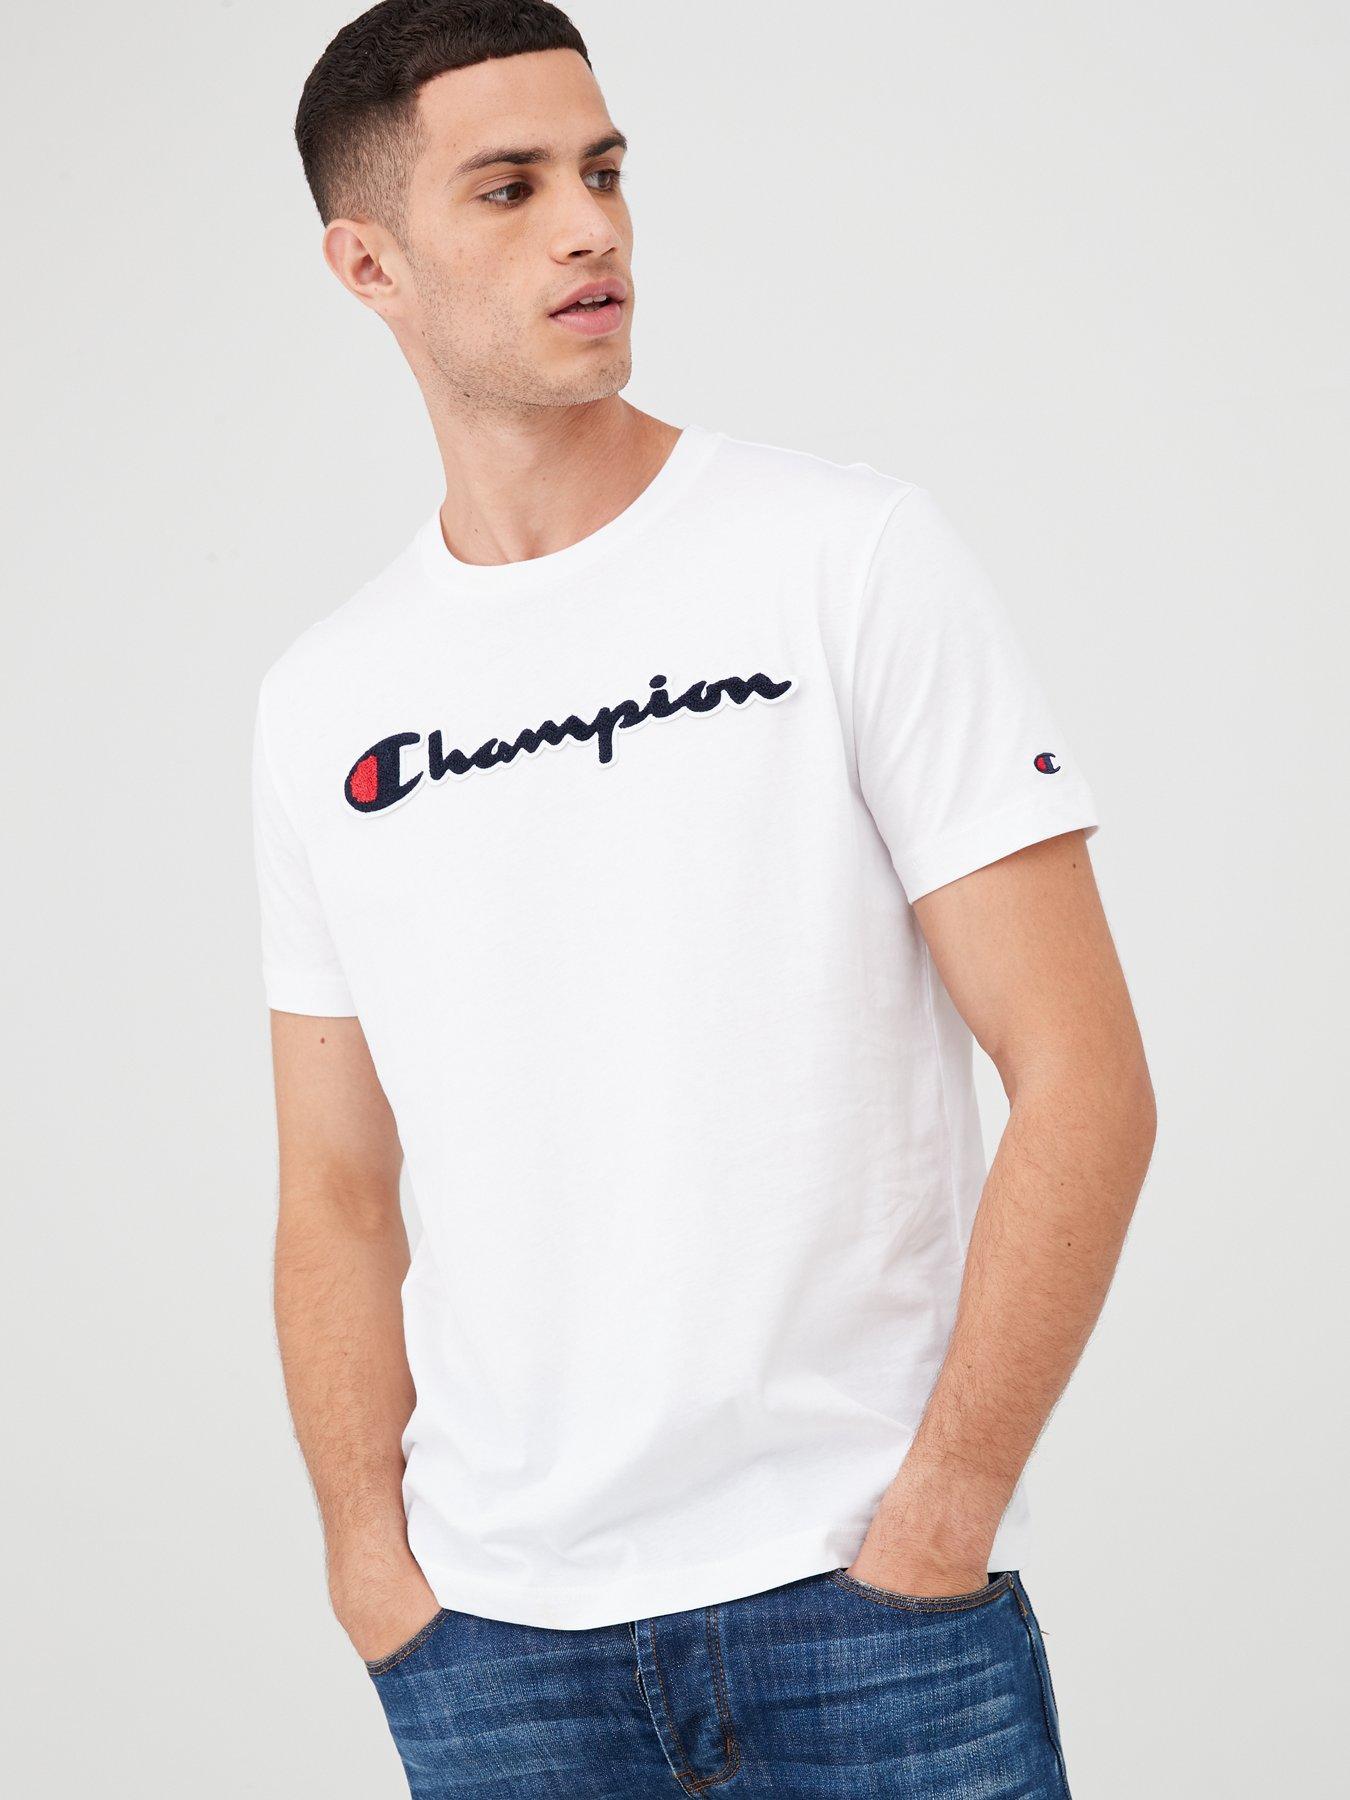 champion shirt size